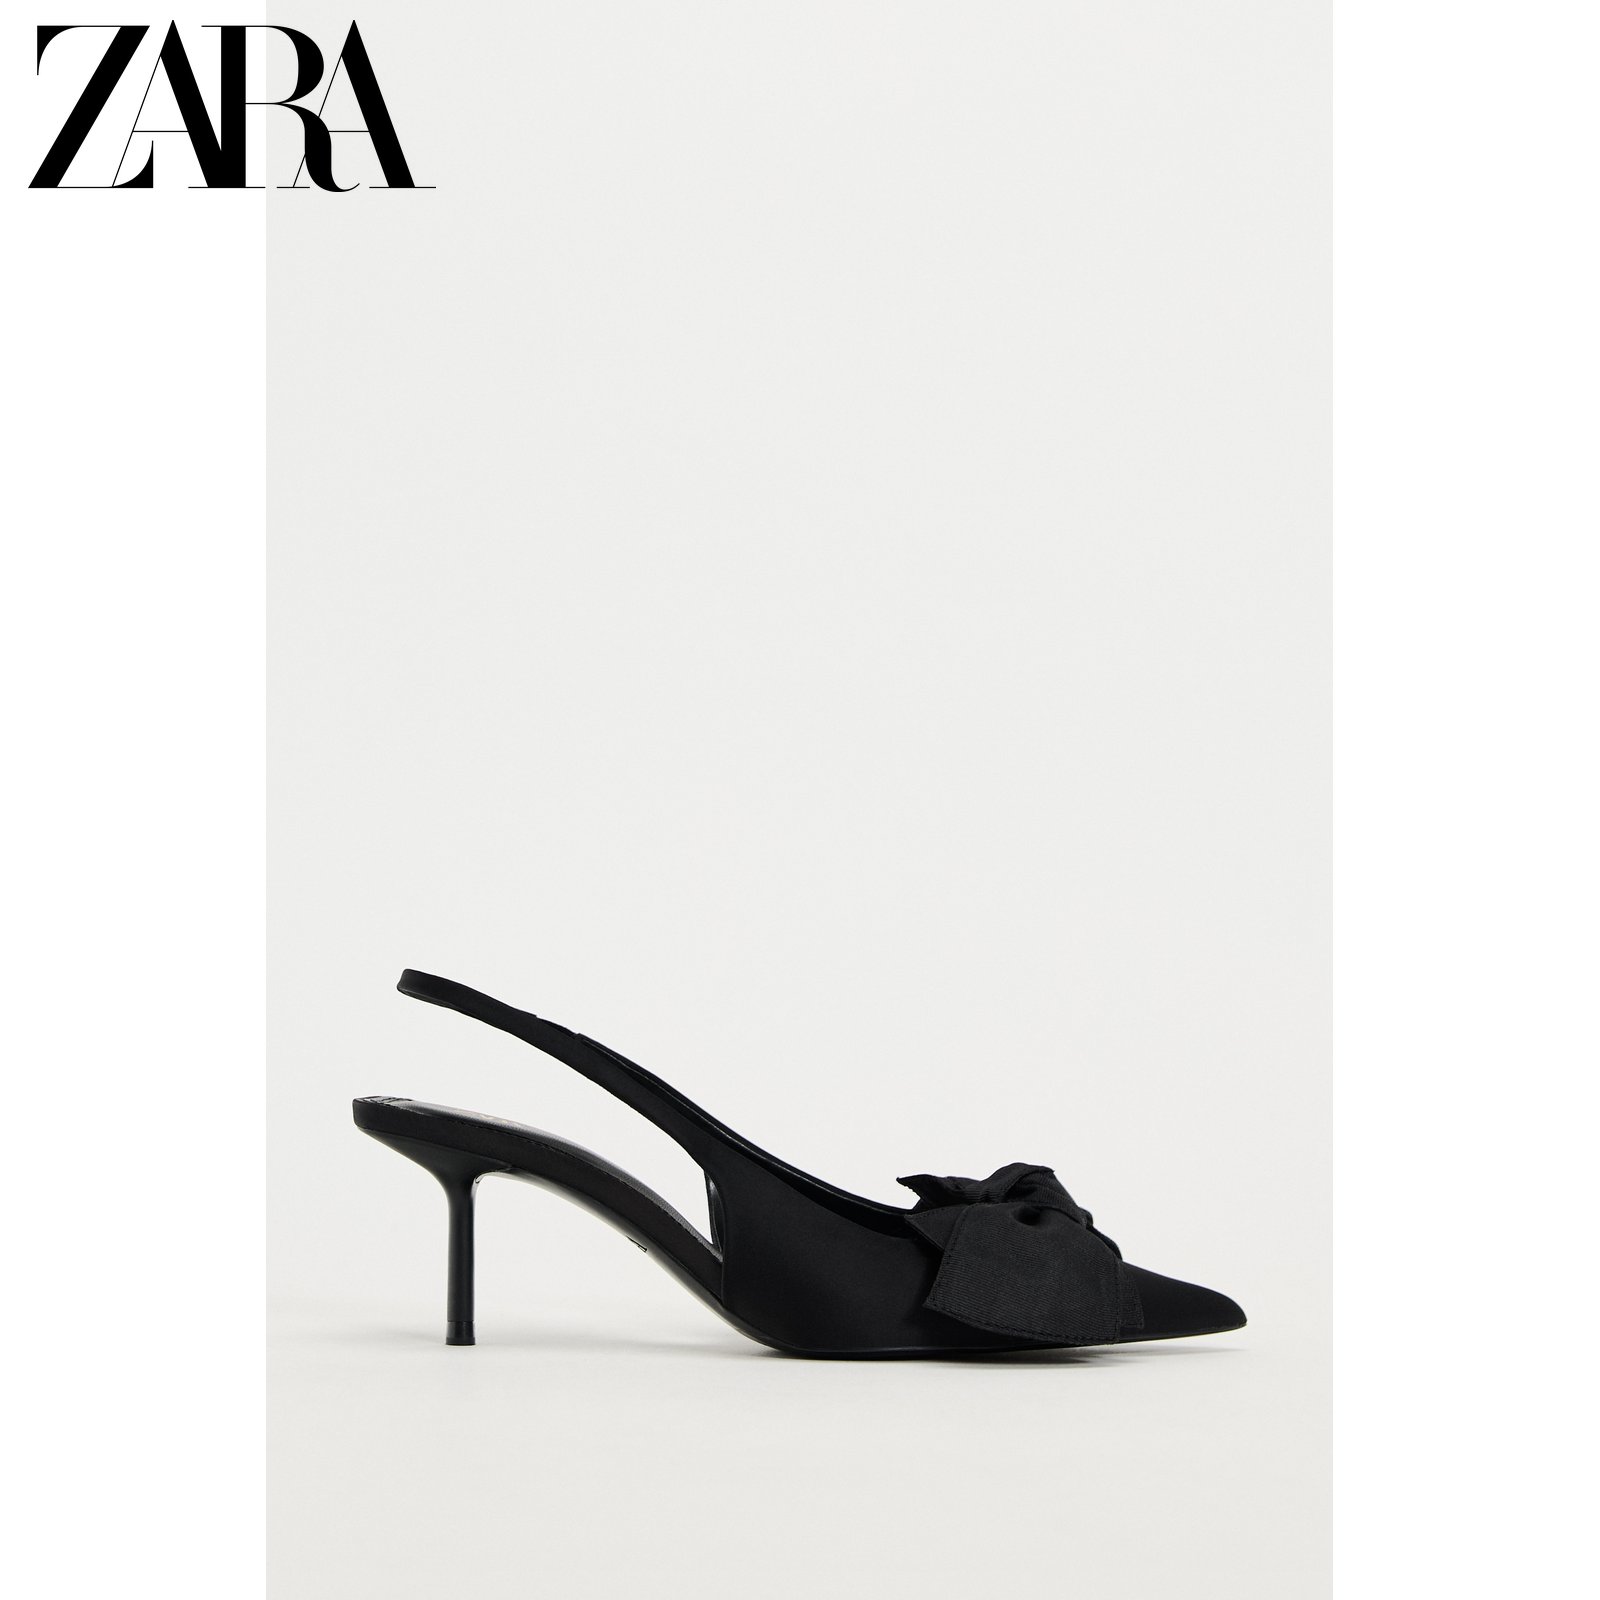 ZARA 春の新作婦人靴気質リボン装飾ポインテッドトゥハイヒールスリングバックミュールシューズ 2267310 800